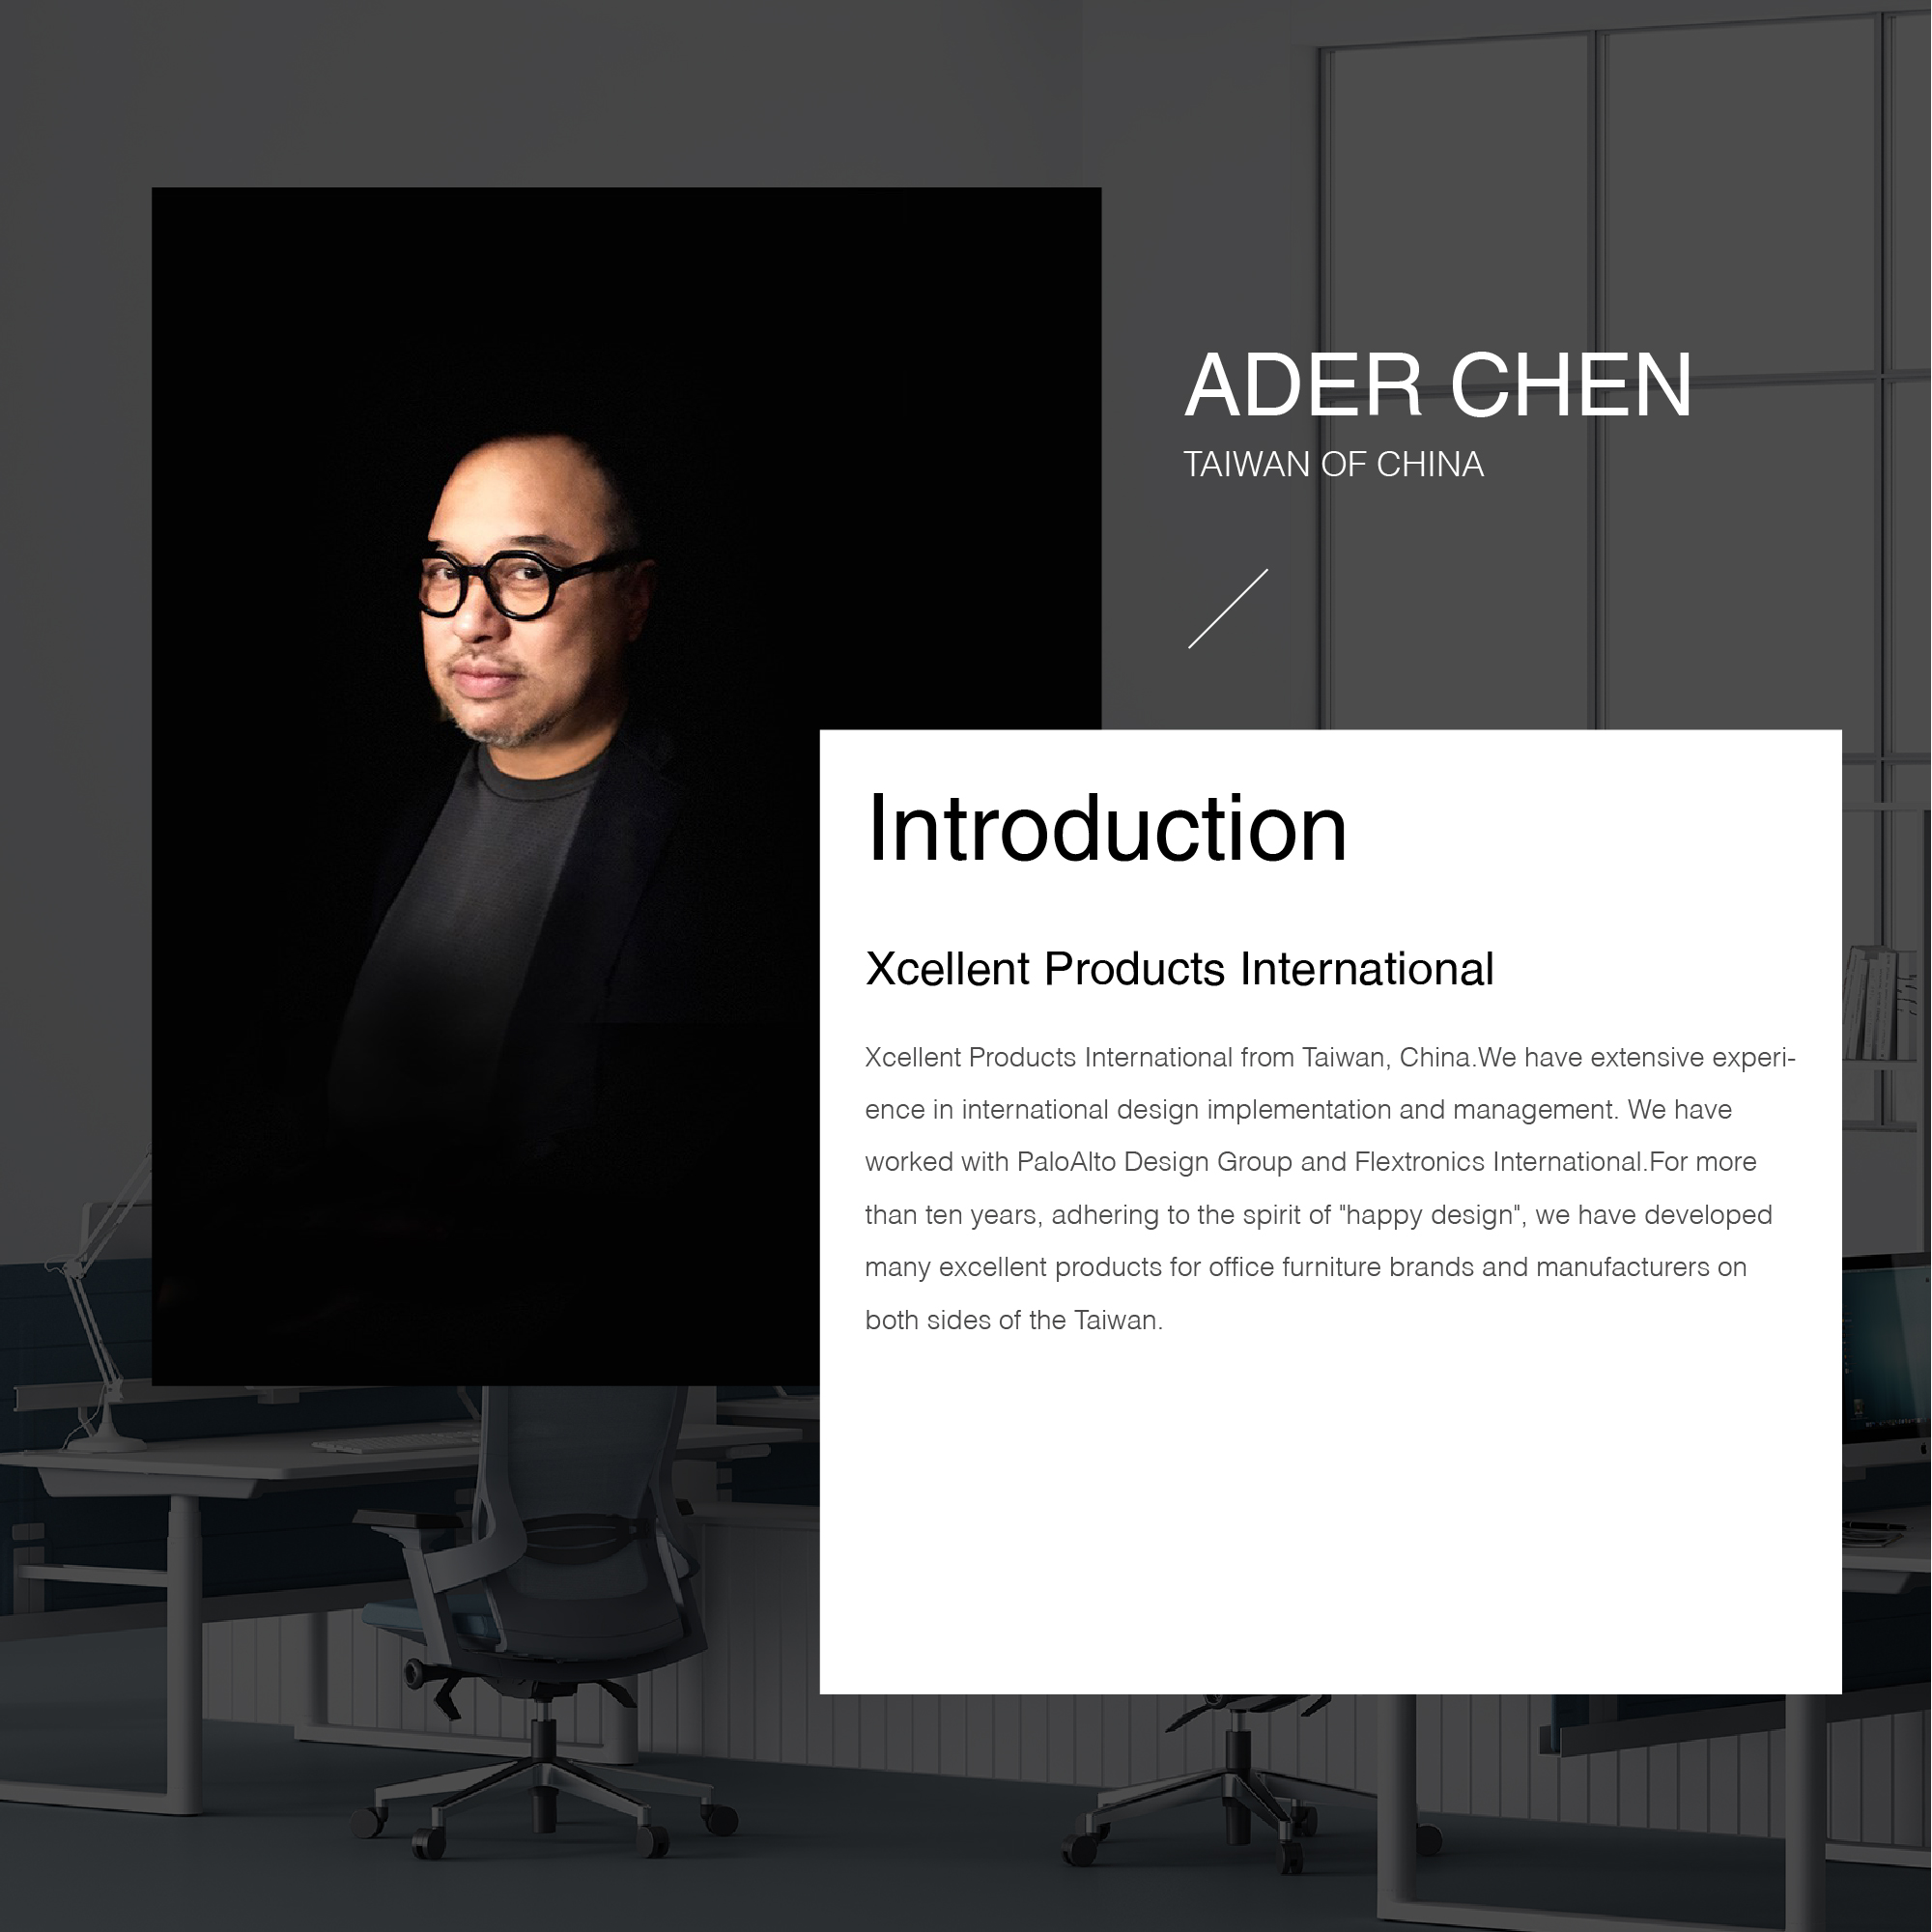 Ader Chen